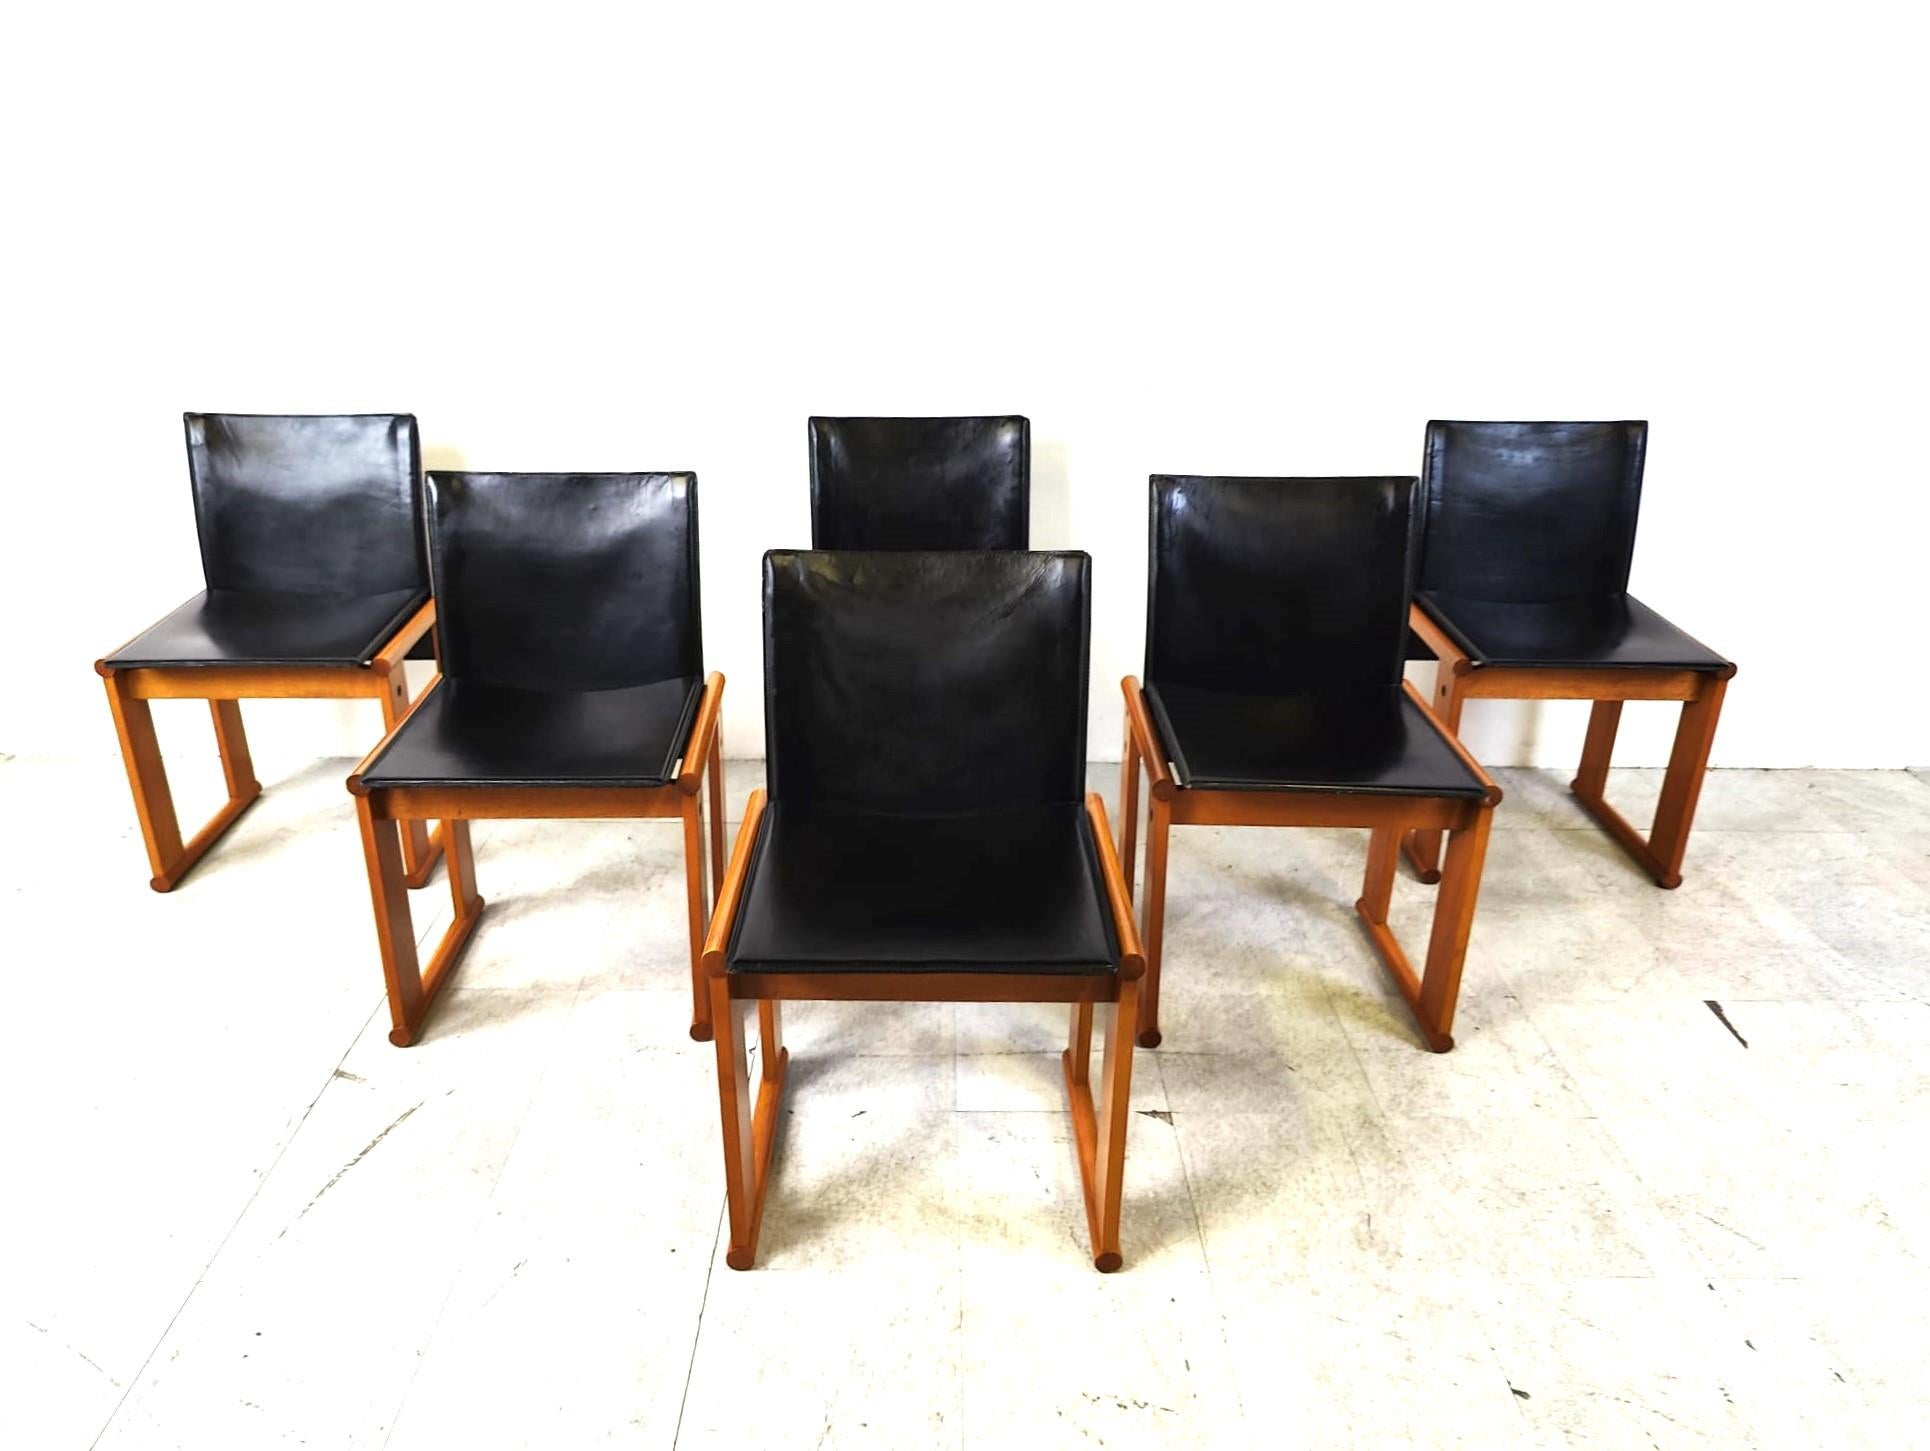 6 Esszimmerstühle, entworfen von Tobia & Afra Scarpa für Molteni.

Wunderschöne moderne Holzrahmen mit schwarzen Ledersitzen und -rückenlehnen.

Wie immer bei den Entwürfen von Scarpa haben wir hohe Qualitätsstandards und zeitloses Design.

Guter